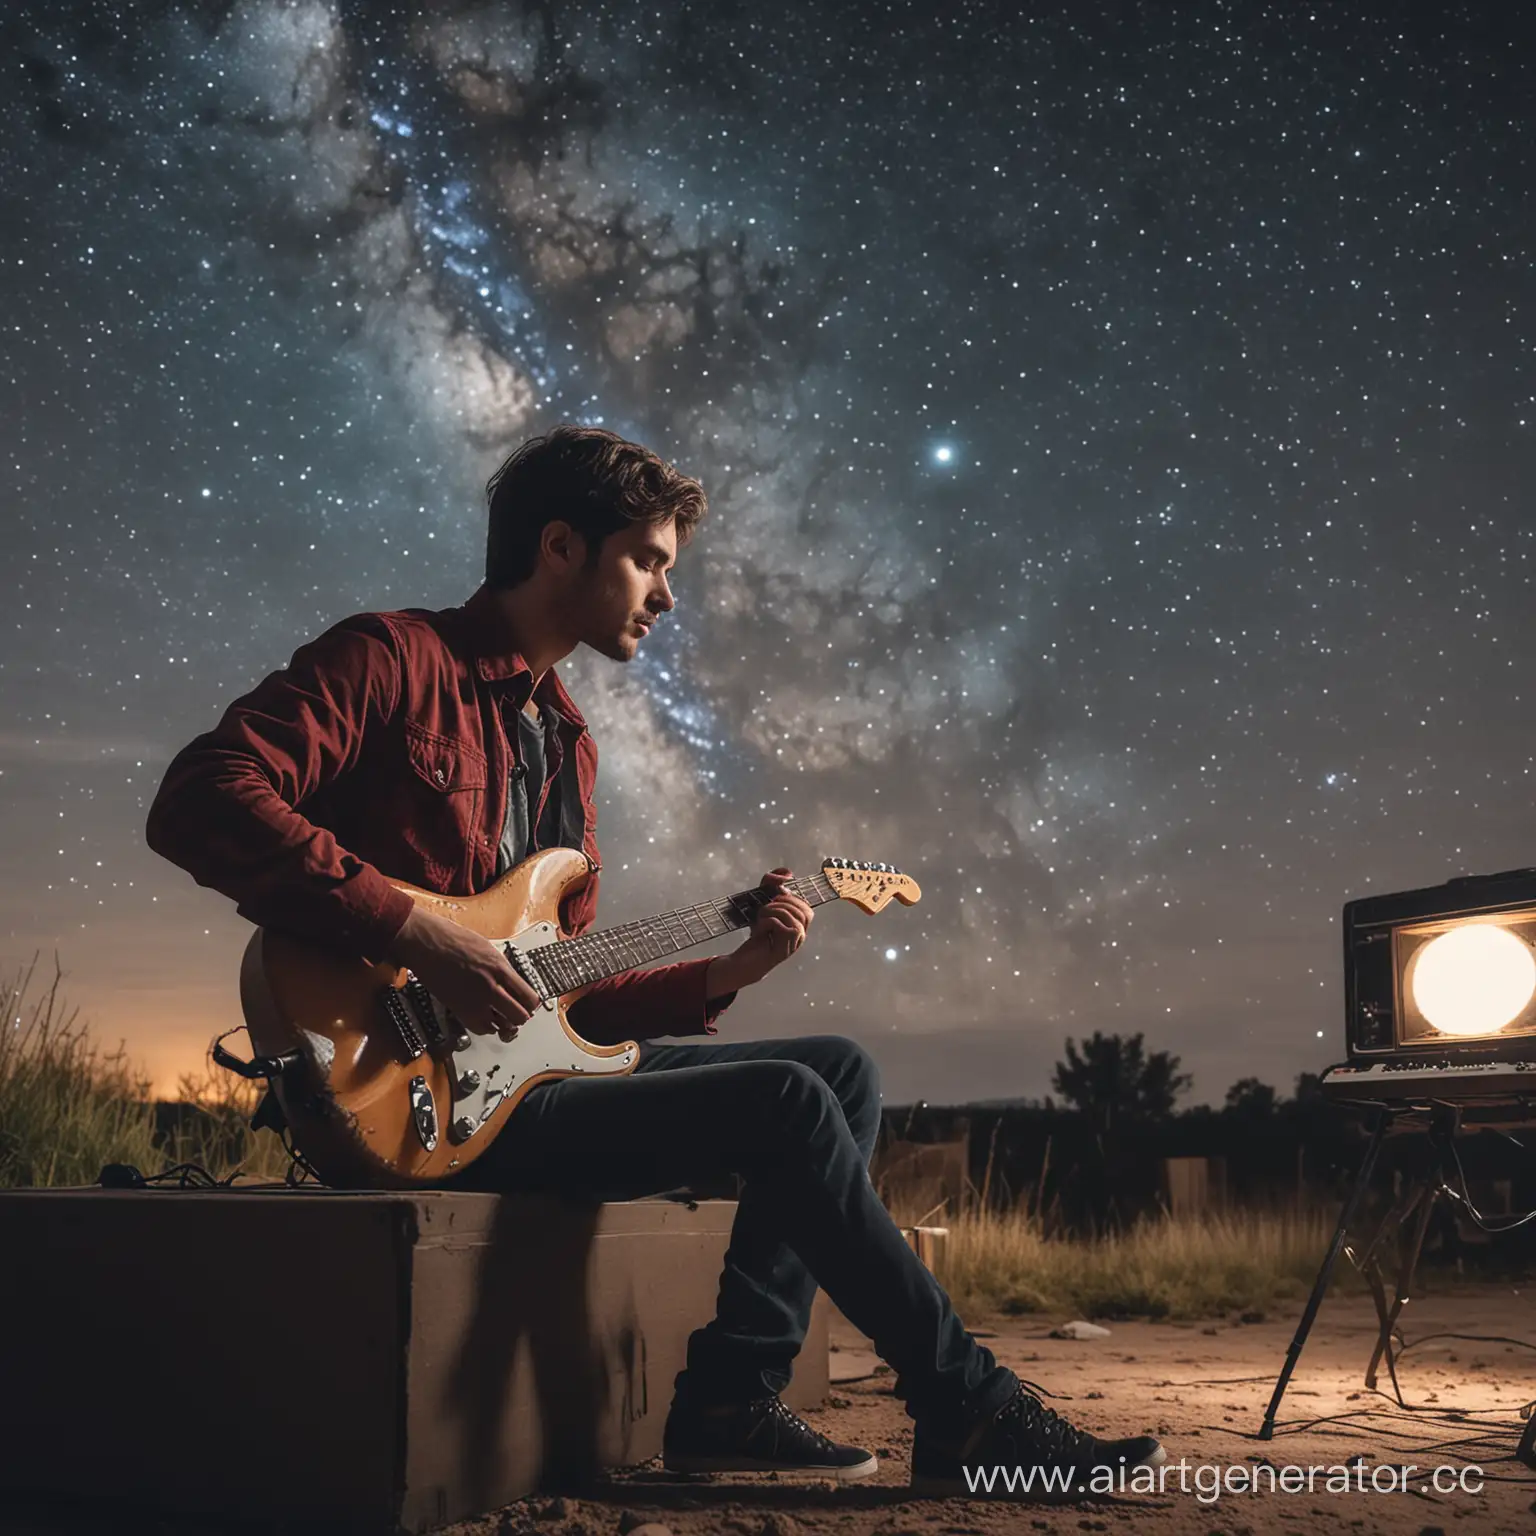 Парень сидит в музыкальной студии и играет на электро гитаре, а за окном - ночное звёздное небо